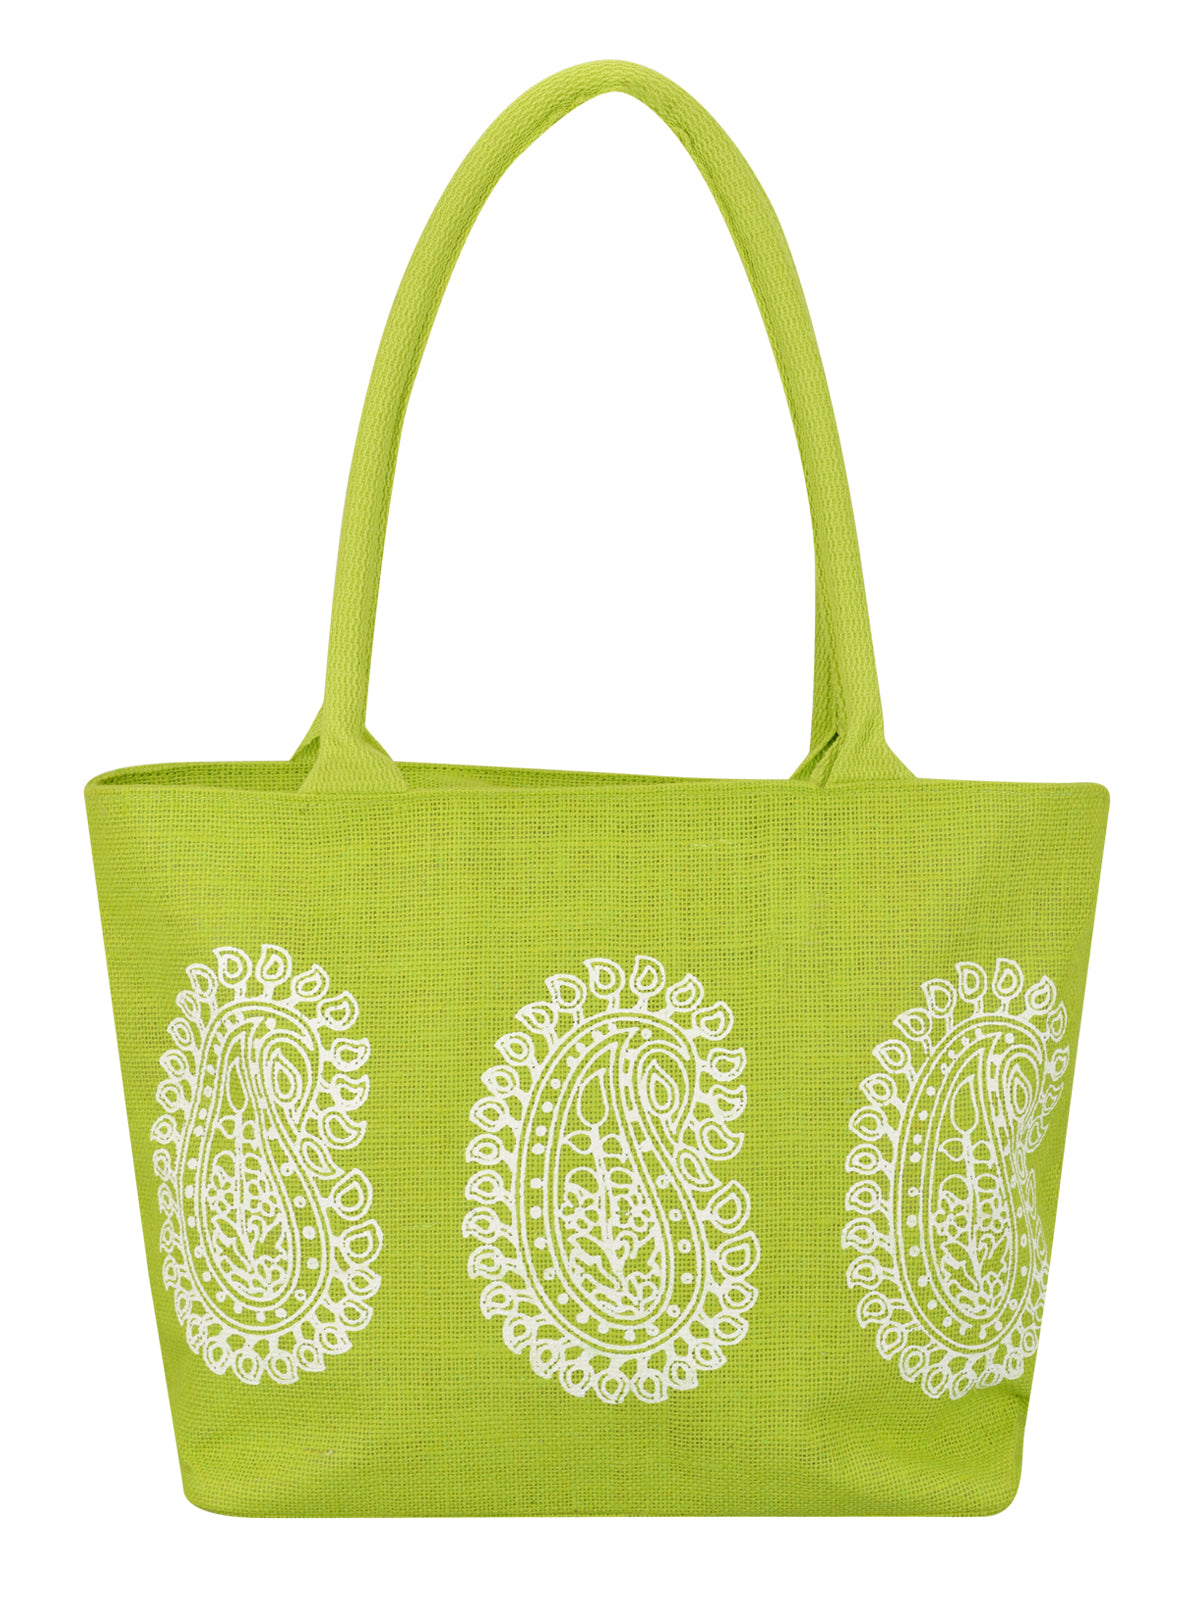 H&B Jute Shopping Bag - Designer Tote Bag (Spiral, Blue) : Amazon.in:  Fashion